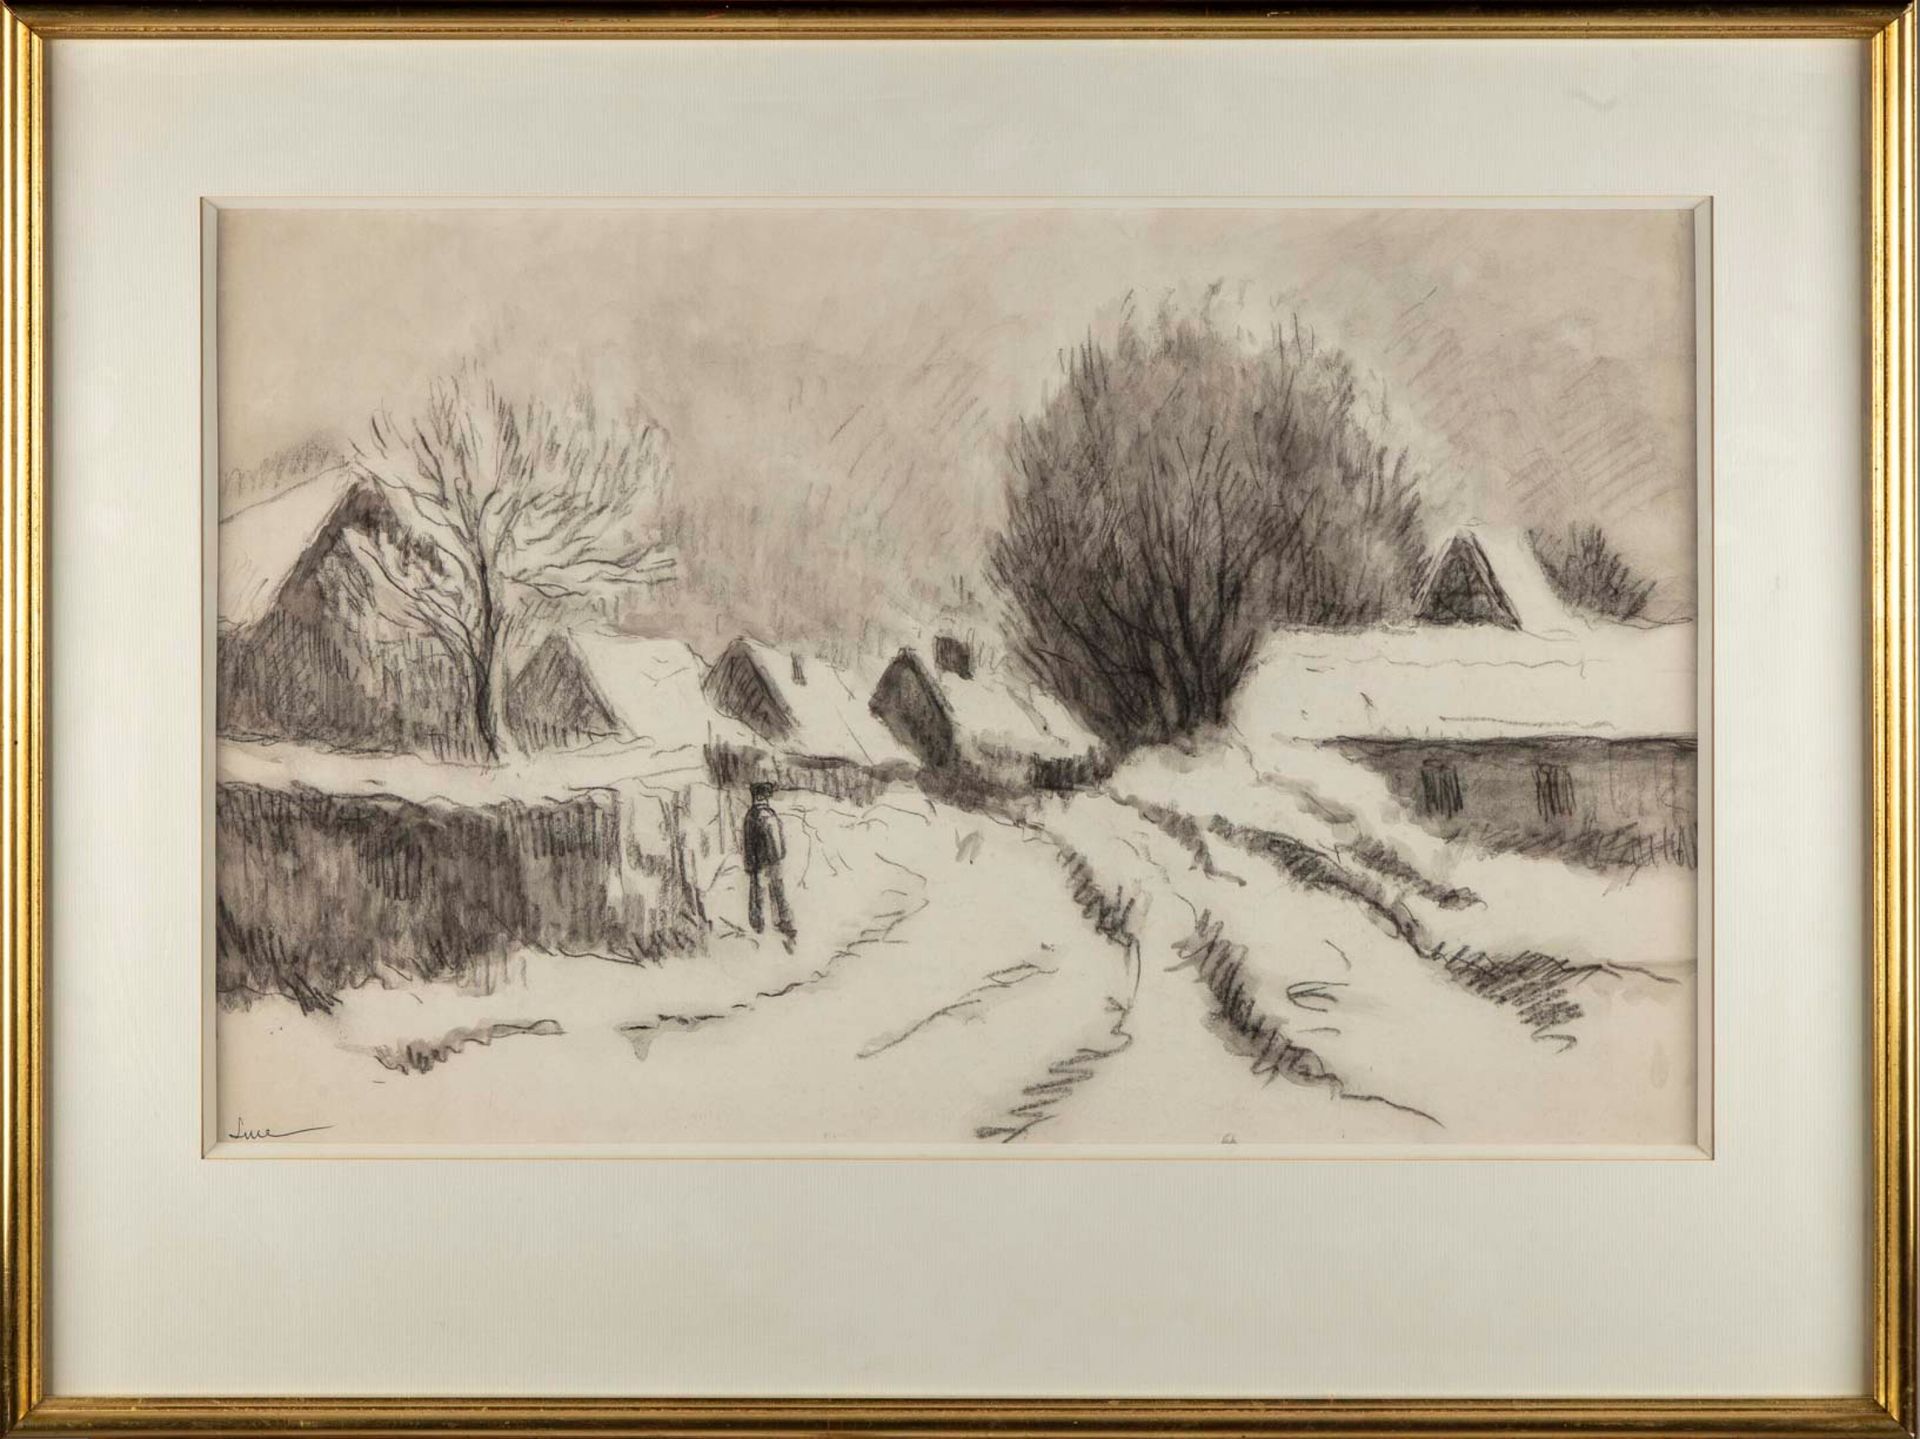 Maximilien Luce Maximilien LUCE (1858-1941)

Paysage sous la neige 

Dessin au c&hellip;